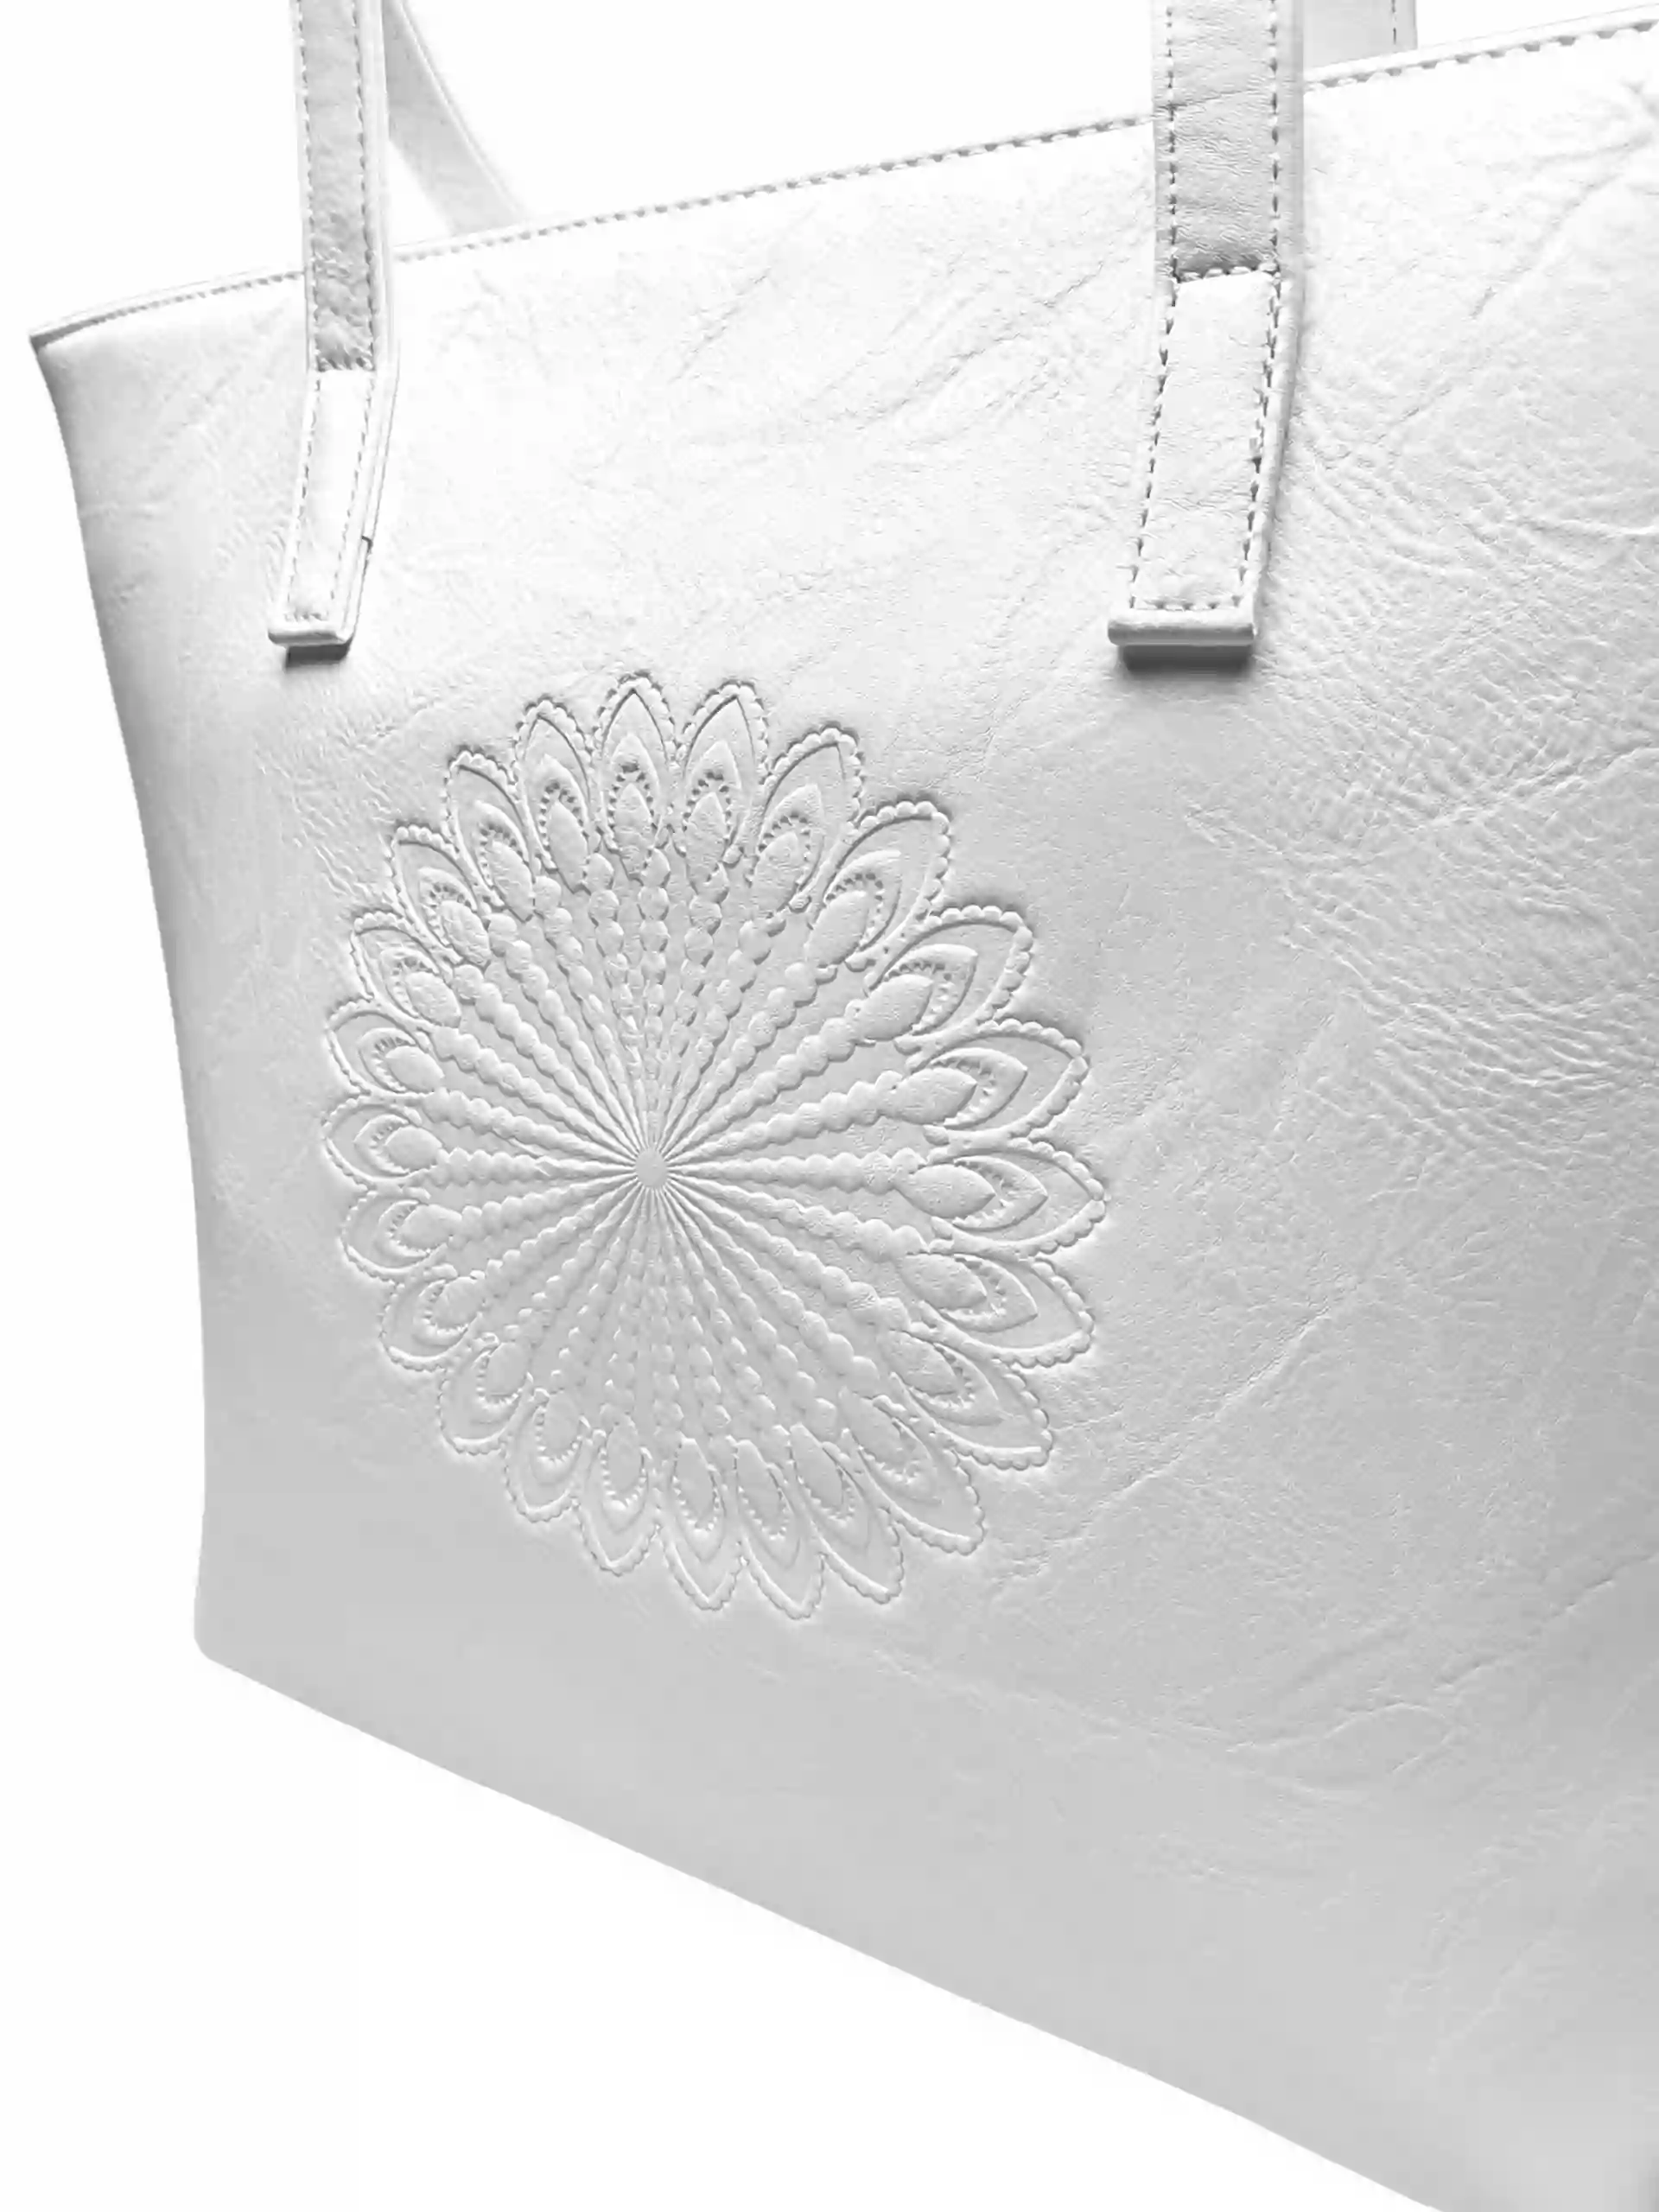 Bílá dámská kabelka přes rameno se vzorem, Tapple, H17409N, detail zadní strany kabelky